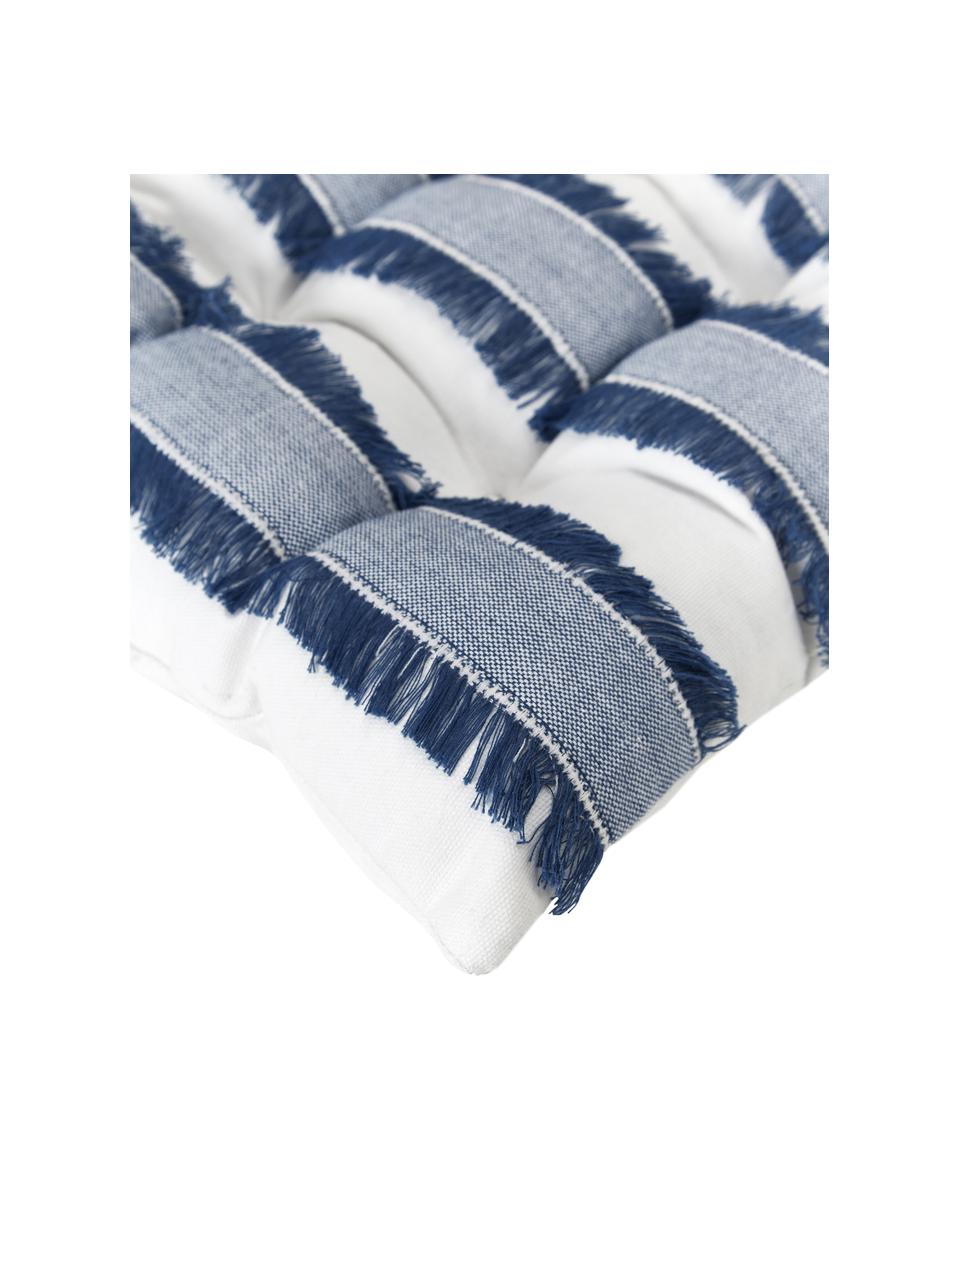 Poduszka na krzesło z bawełny z frędzlami Raja, Kremowobiały, niebieski, S 40 x D 40 cm